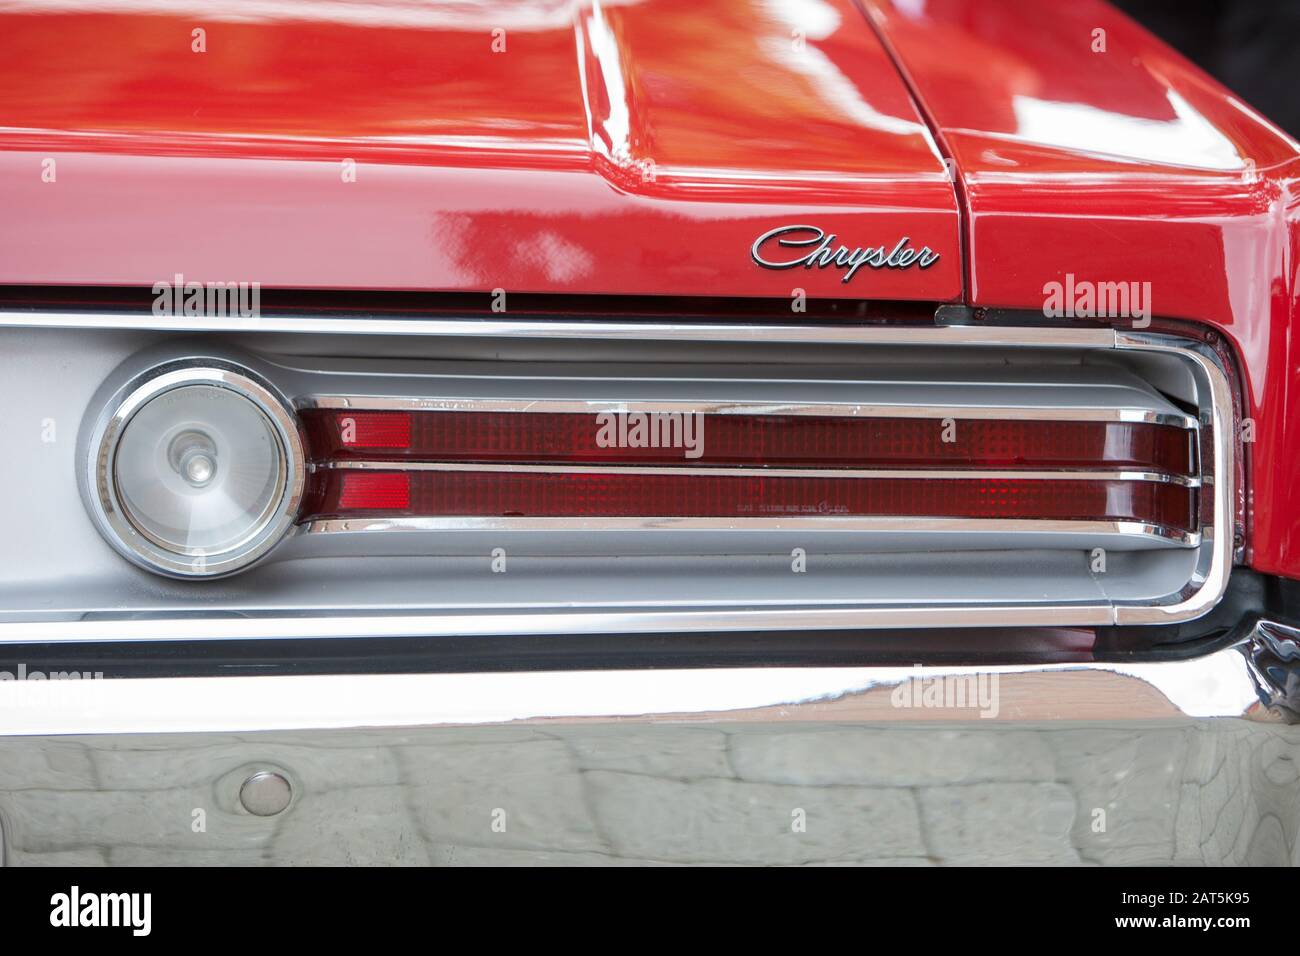 Gros plan de l'arrière d'un Chrysler 300 rouge vintage des années 60 montrant les feux arrière Banque D'Images